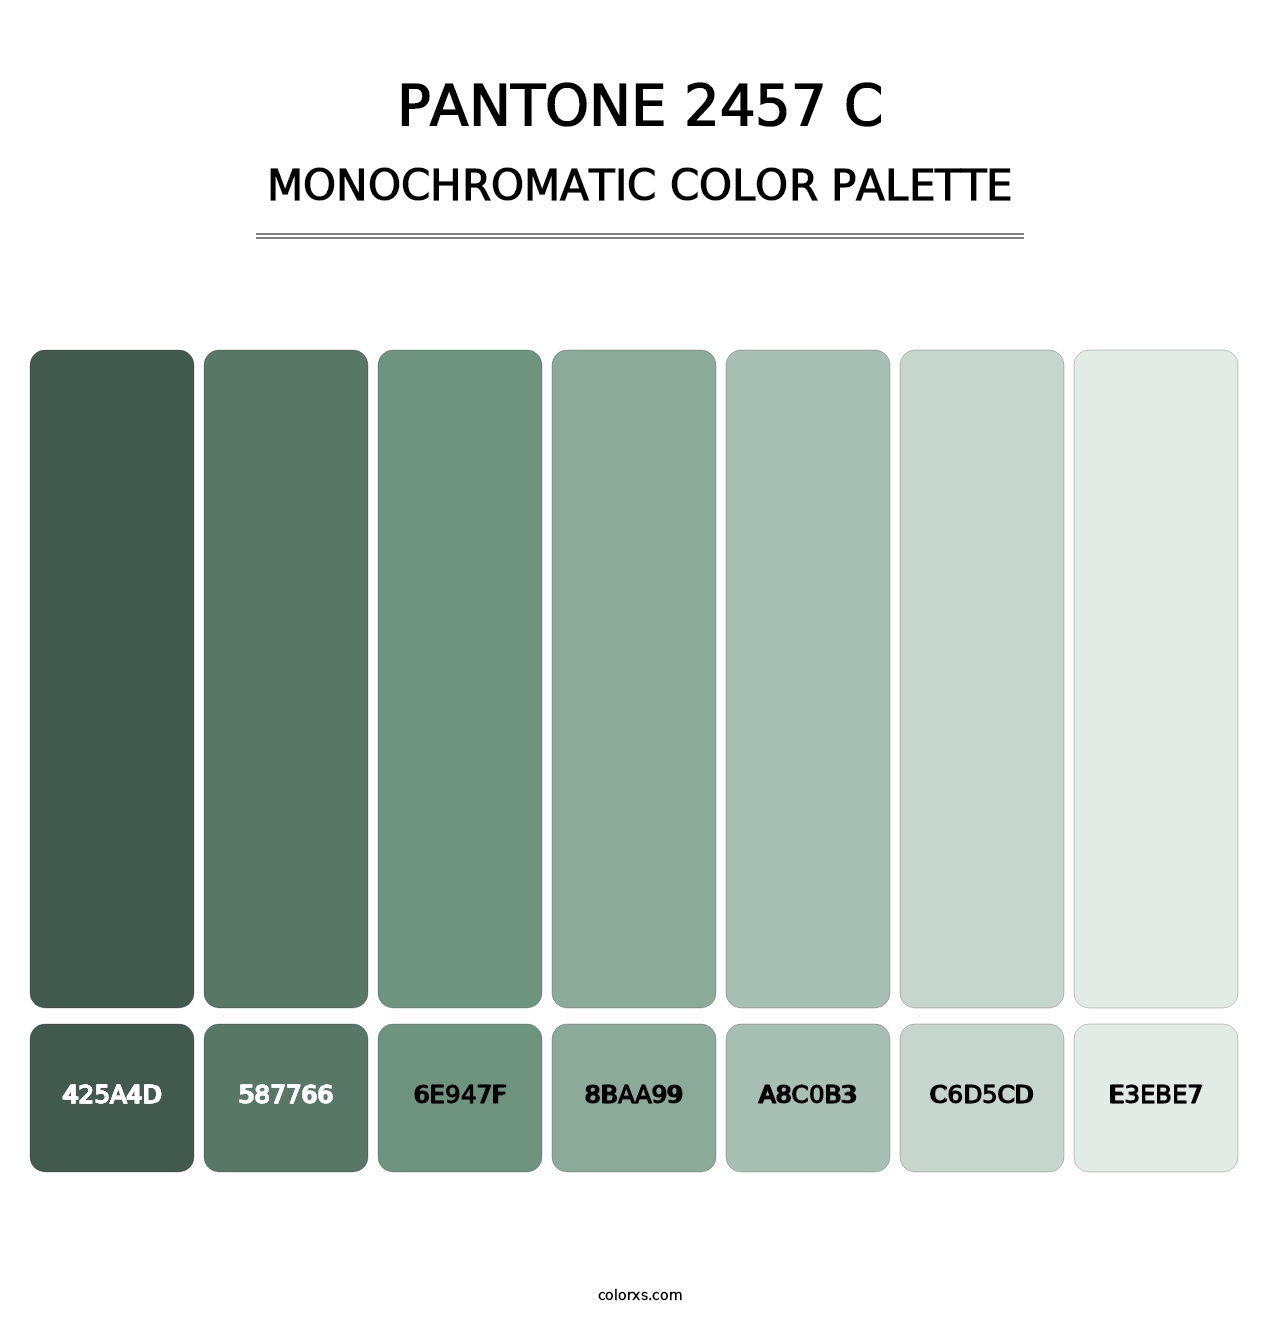 PANTONE 2457 C - Monochromatic Color Palette